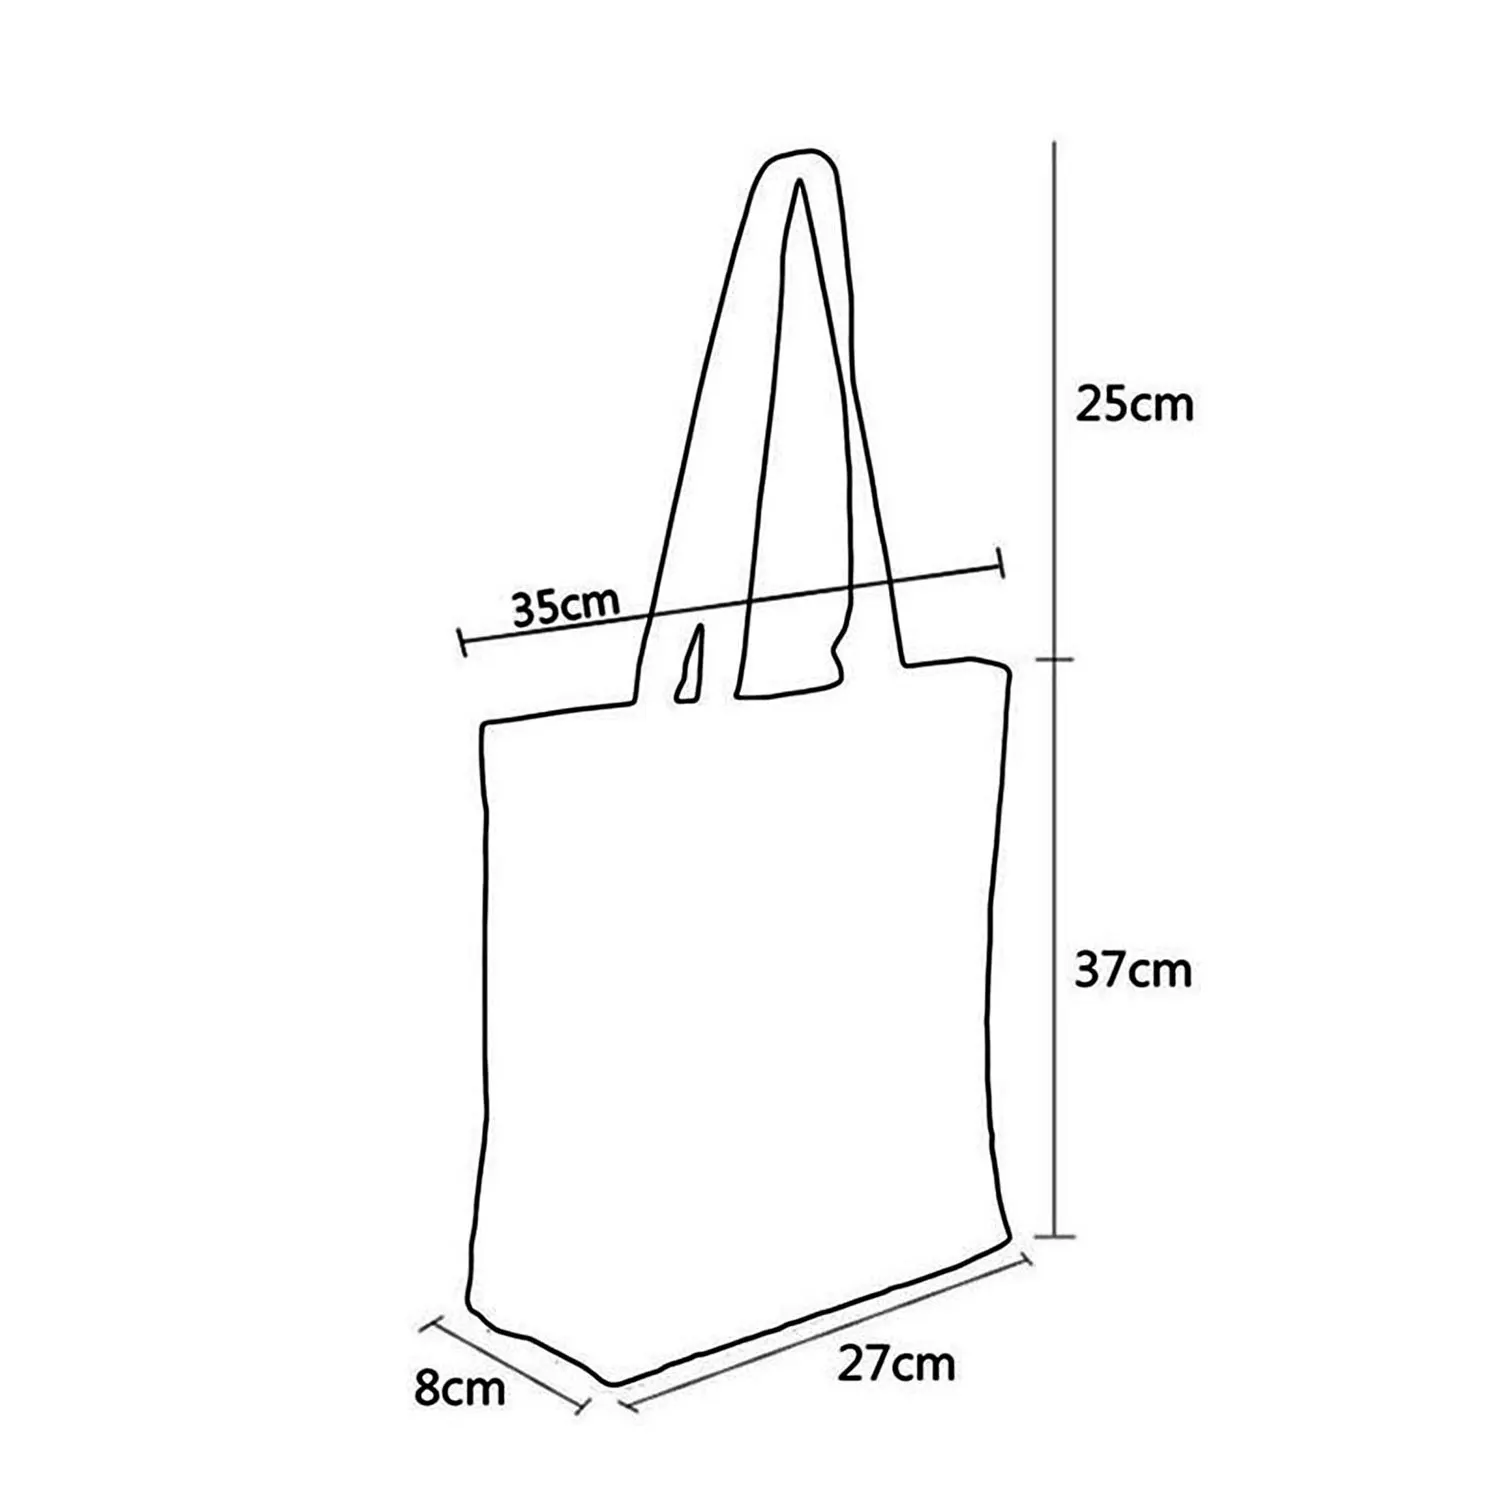 Disney Lilo Stitch Cute Cartoon Printed Handbag High Capacity Eco Reusable Shoppaing Bag Blue Starry Sky Travel Beach Tote Bag